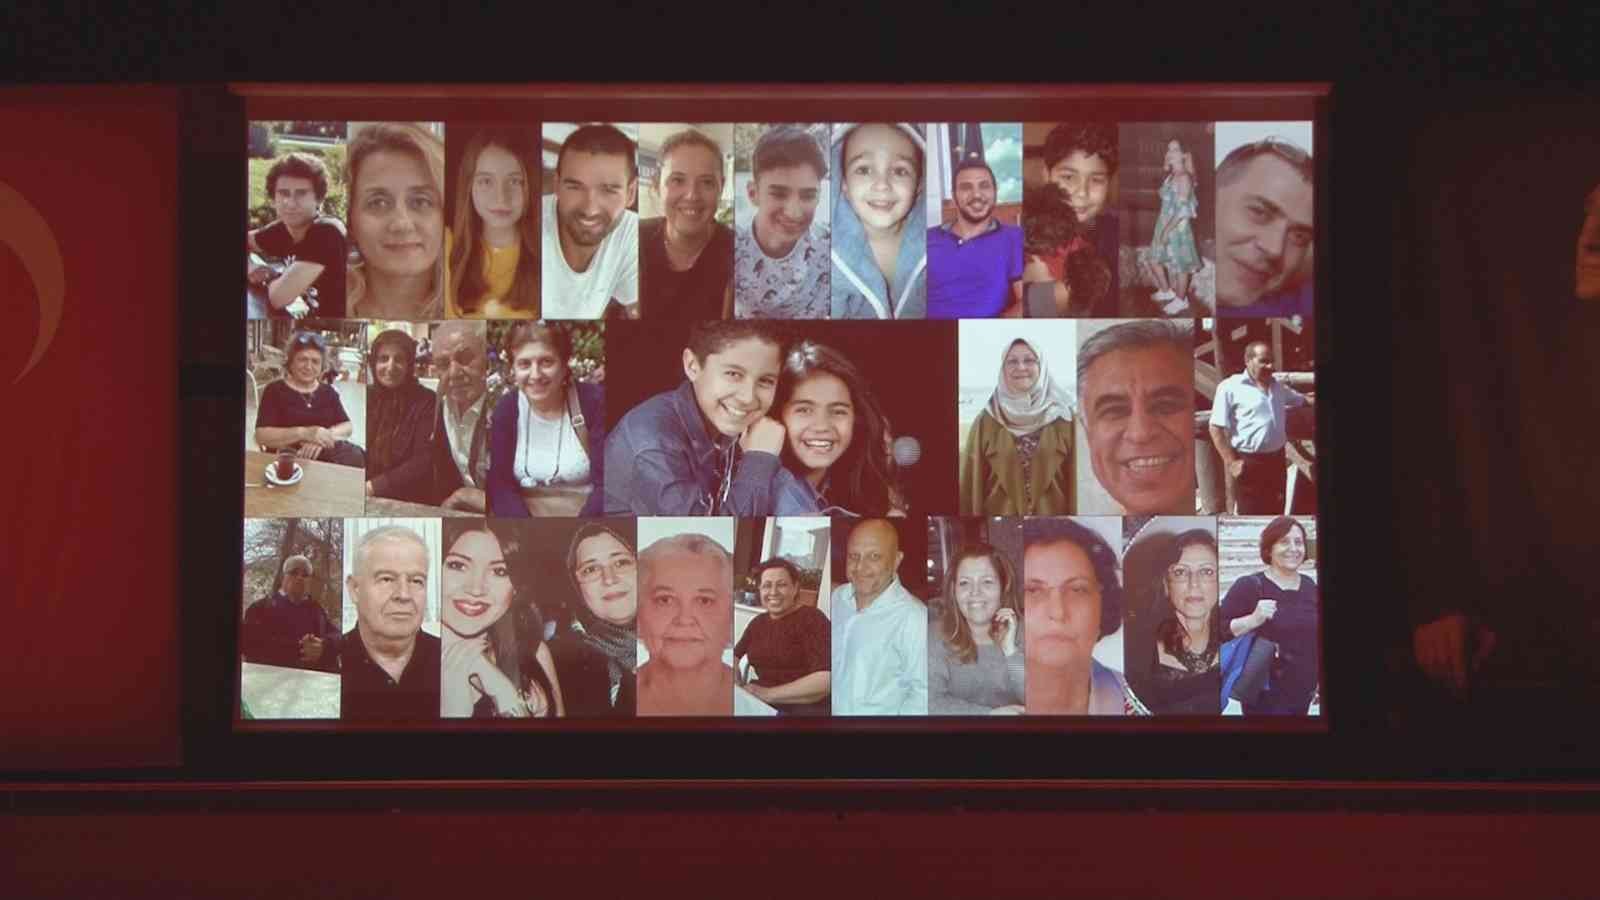 Depremde ölen ikizler için düzenlenen anma gecesinde duygu dolu anlar yaşandı #izmir